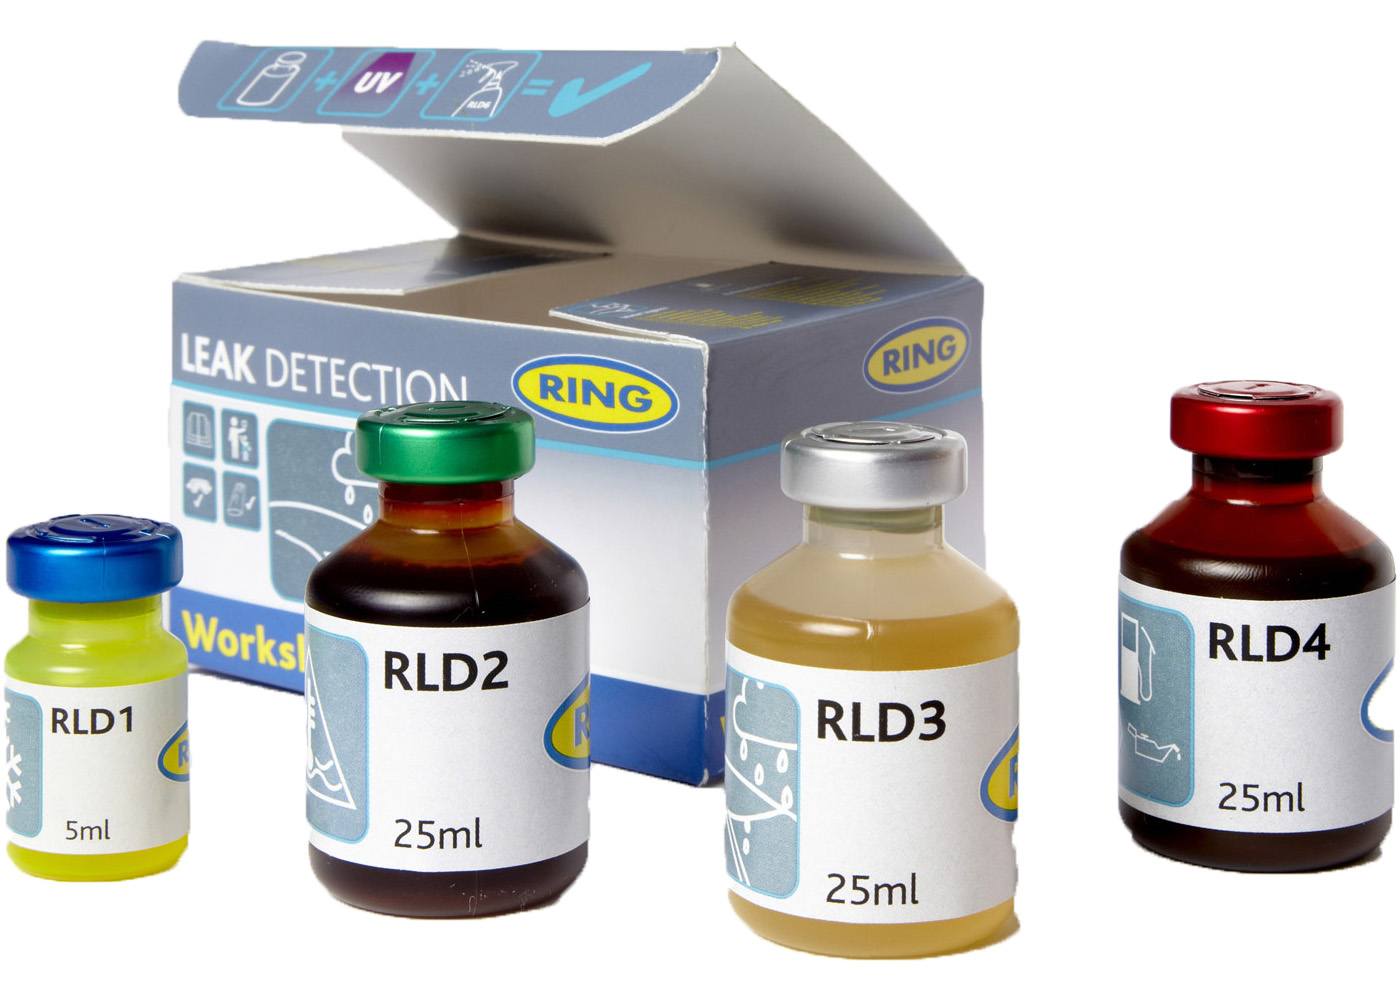 UV Dye & Torch Kit Leak Detection Dye For Power Steering Fluid Oil Leaks RLD4 